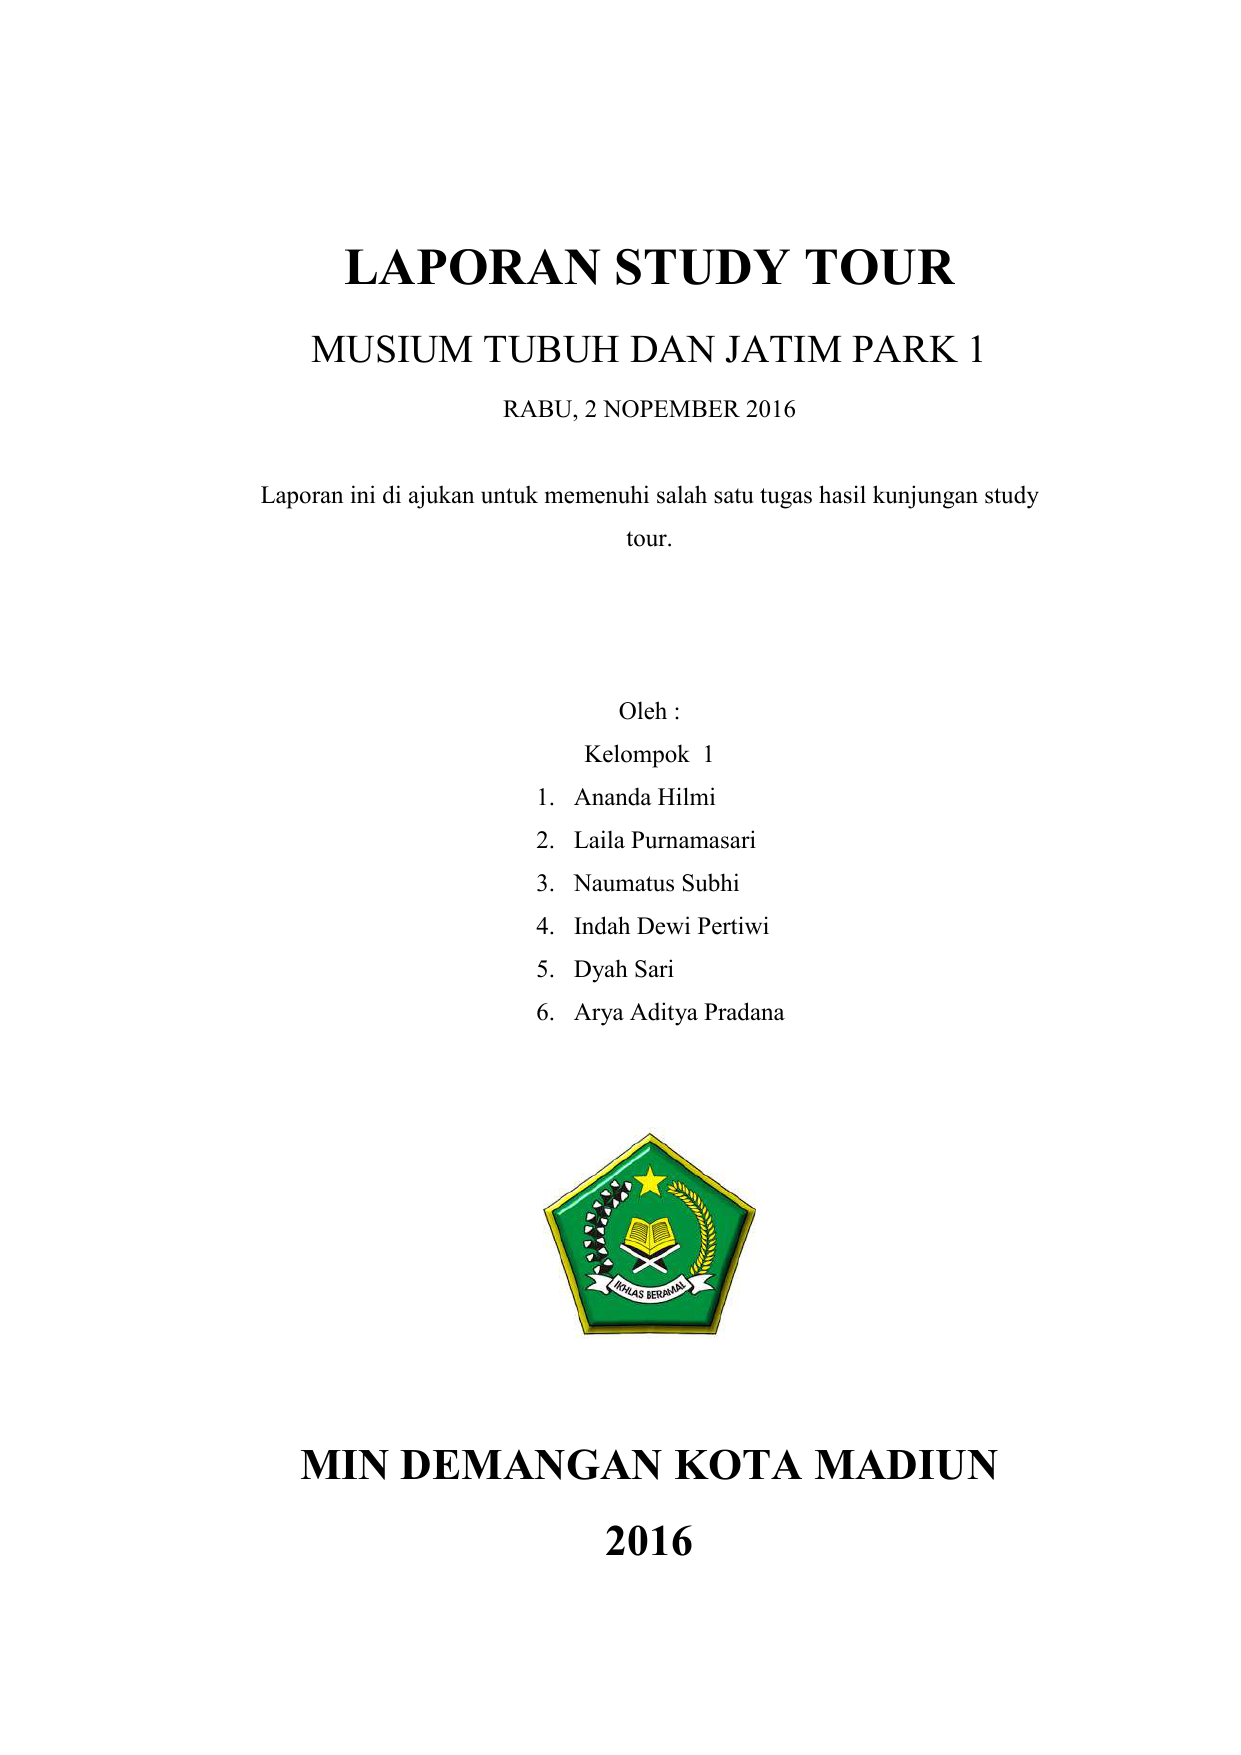 Contoh Proposal Laporan Kegiatan Study Tour Bandung Mobile Legends